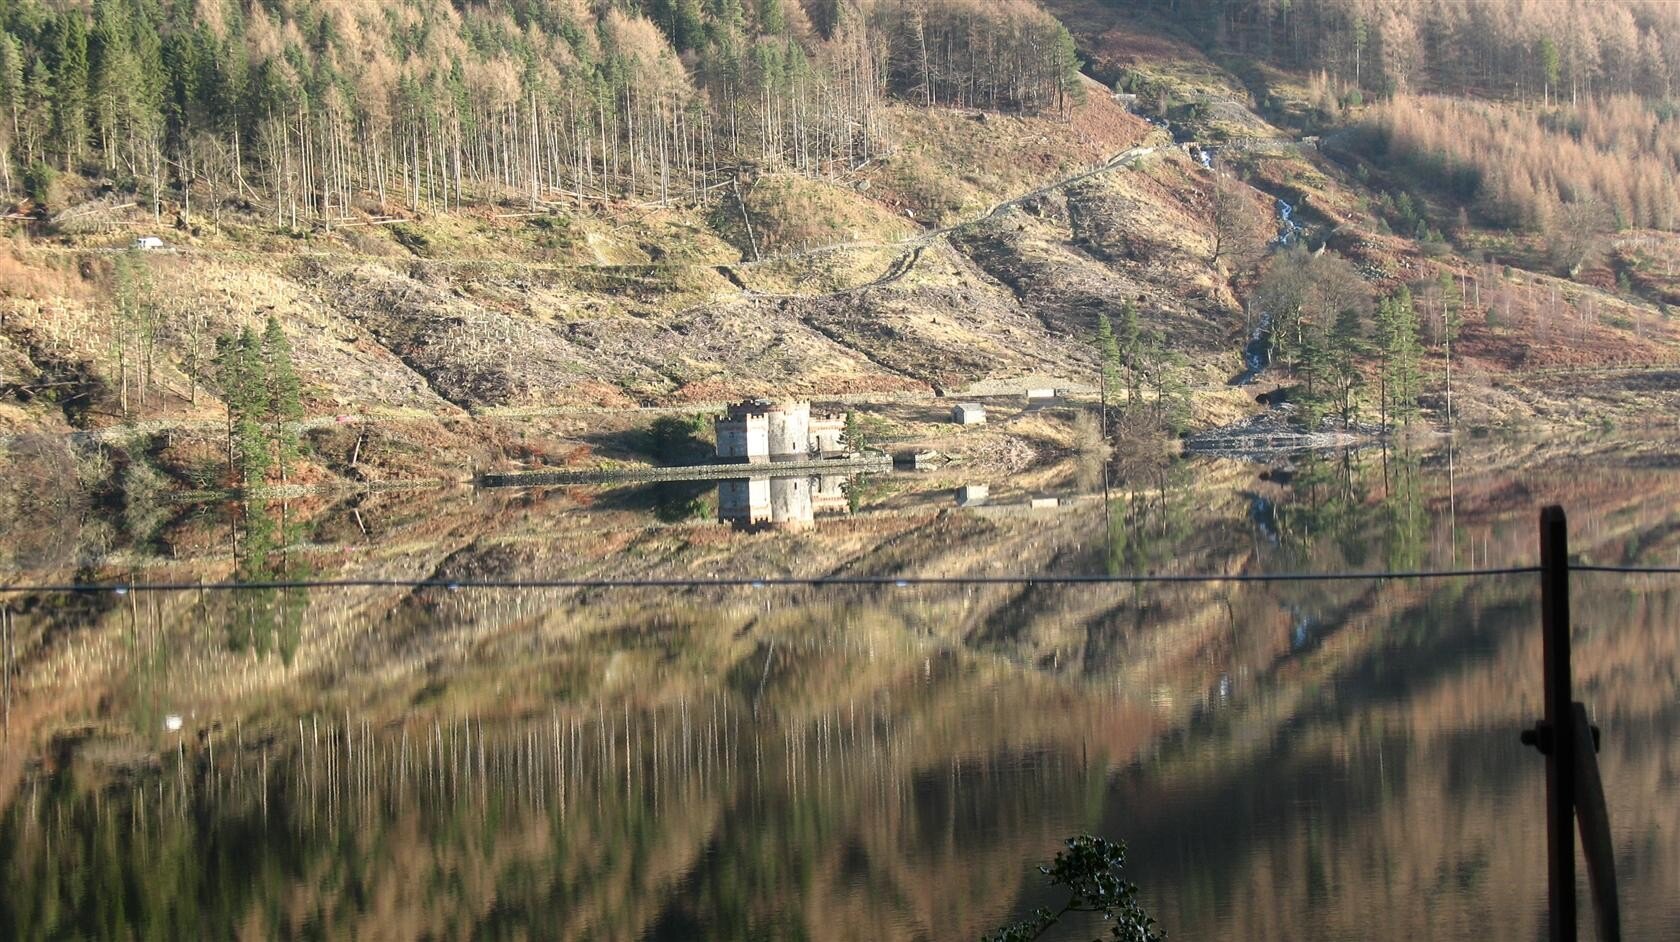 Lake District 2009